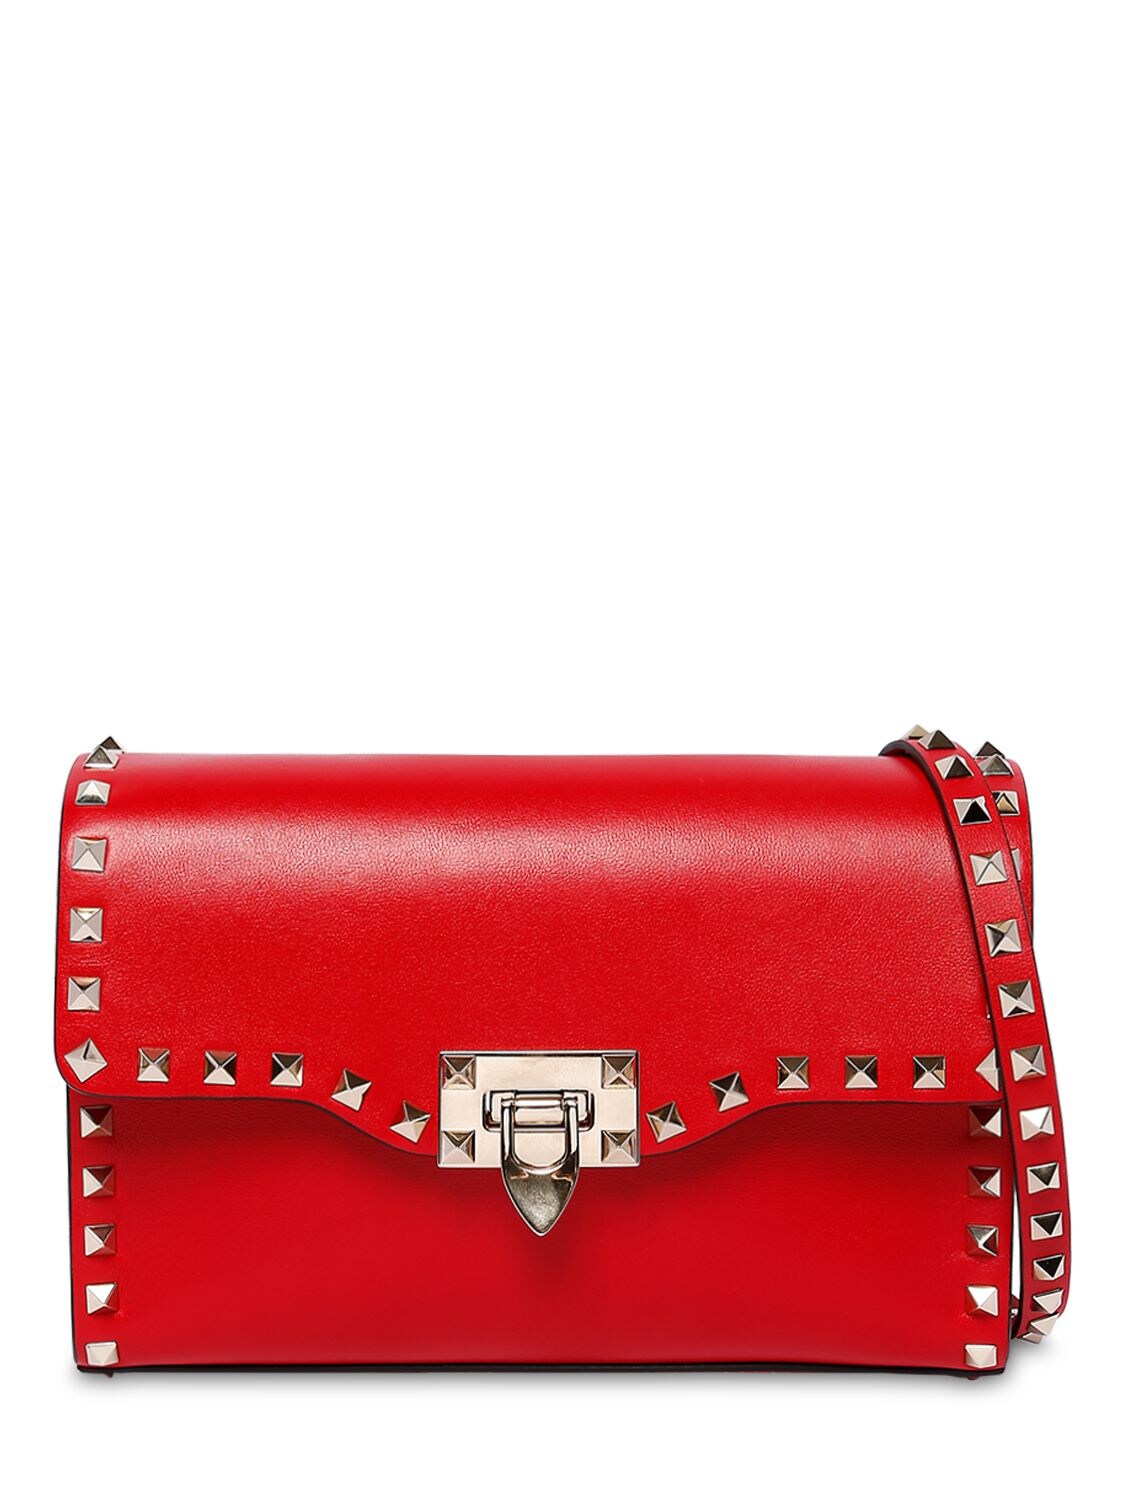 Valentino Garavani Rockstud Embellished Leather Bag In Rouge Pure